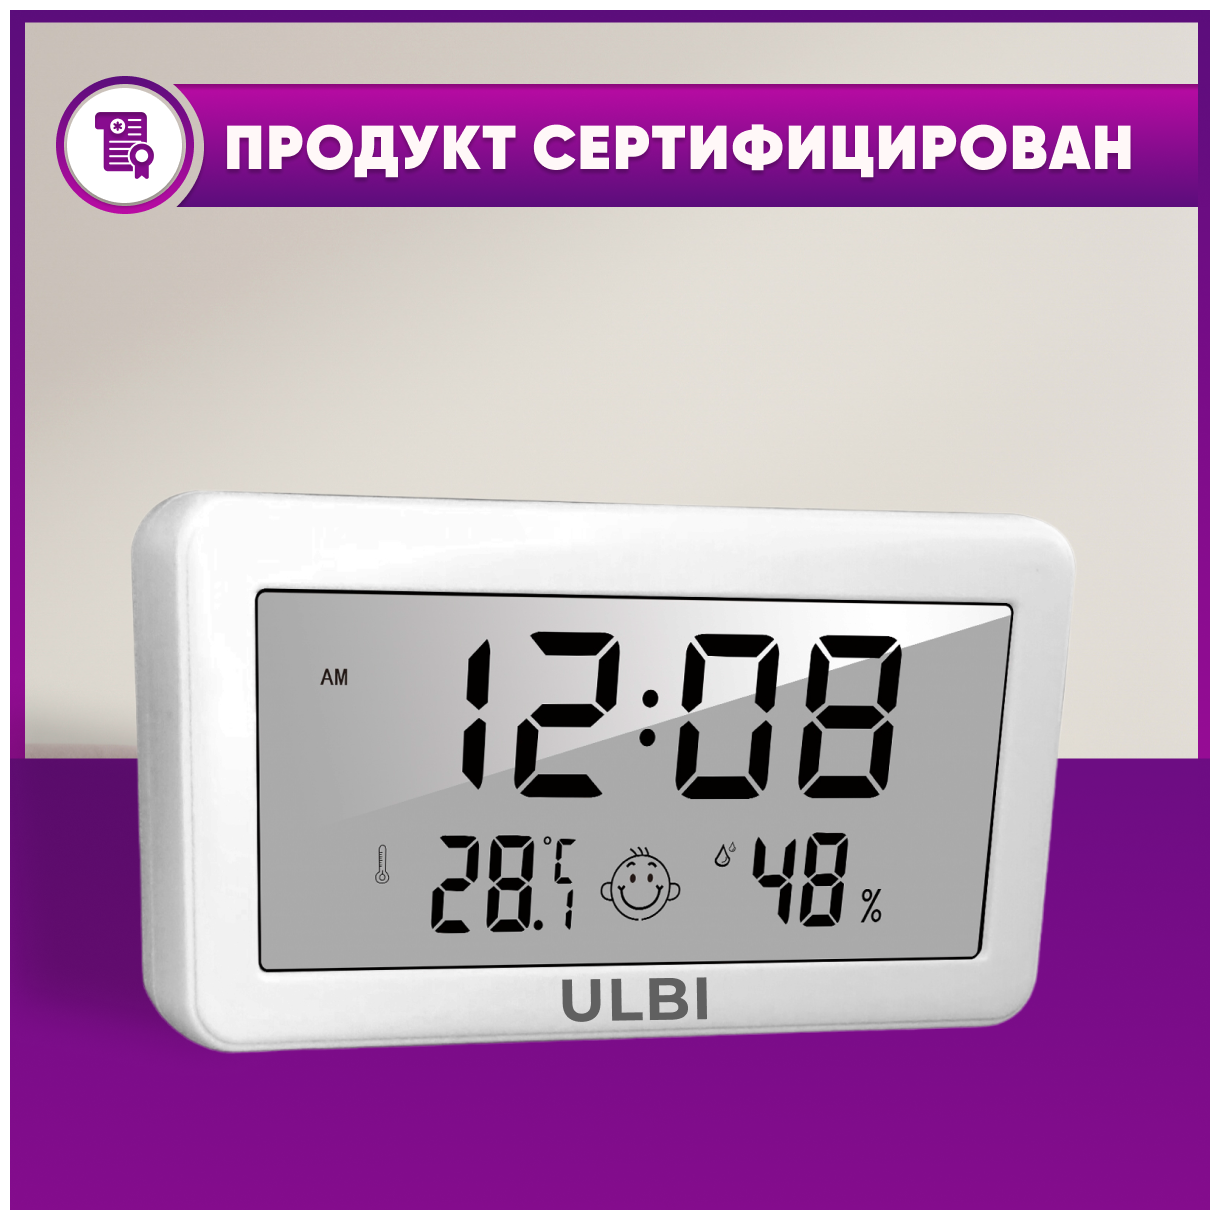 Гигрометр термометр метеостанция с большим экраном календарем часами и будильником / Погодная станция / Цифровой термометр гигрометр / ULBI H2